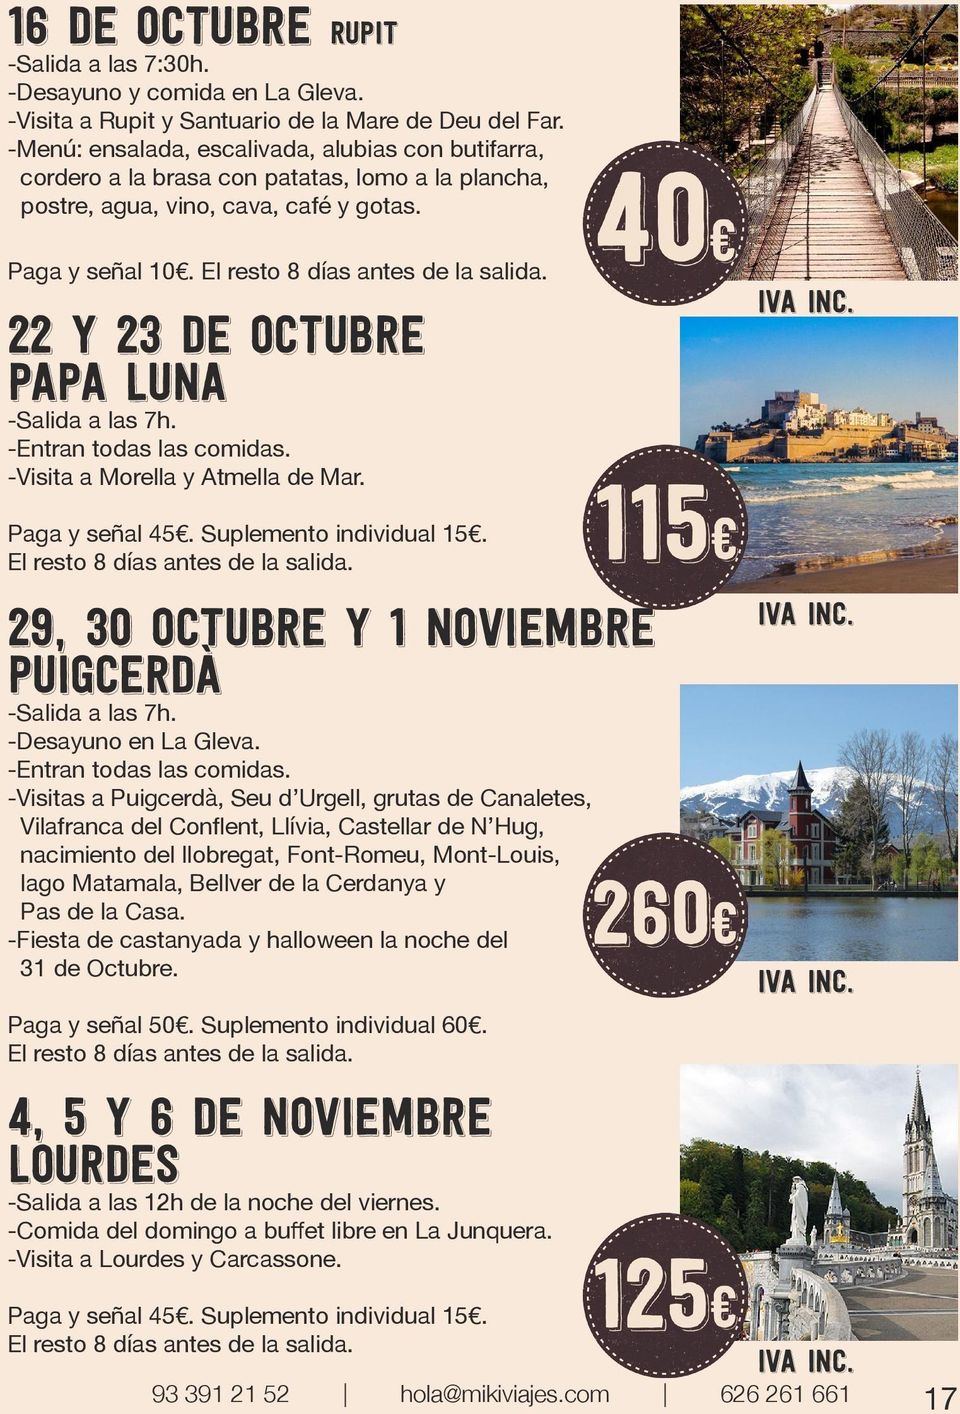 22 y 23 de octubre papa luna -Visita a Morella y Atmella de Mar. Paga y señal 45. Suplemento individual 15.